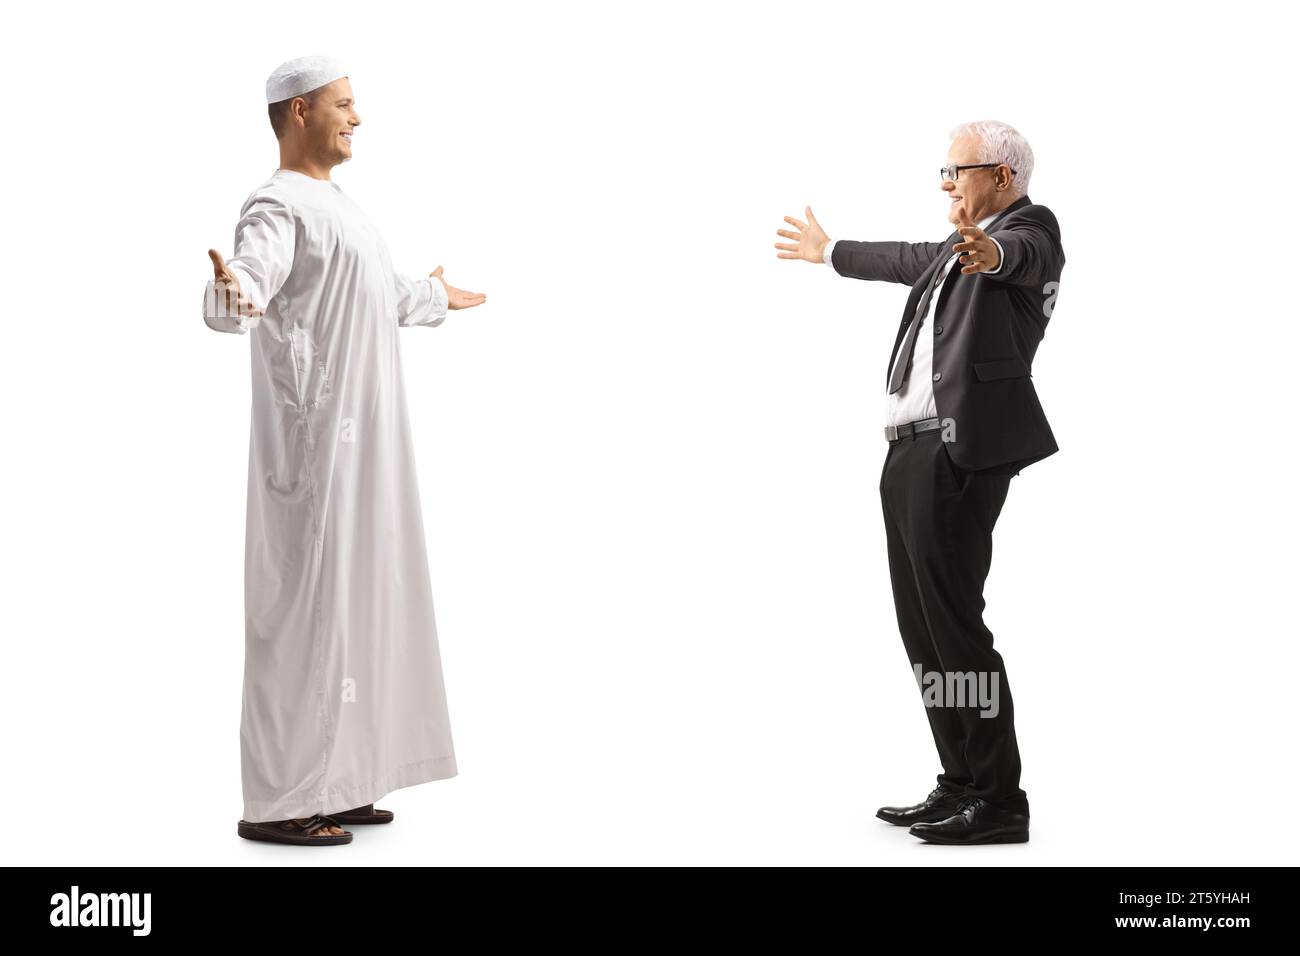 Uomo musulmano che incontra e saluta un uomo d'affari maturo isolato su sfondo bianco Foto Stock